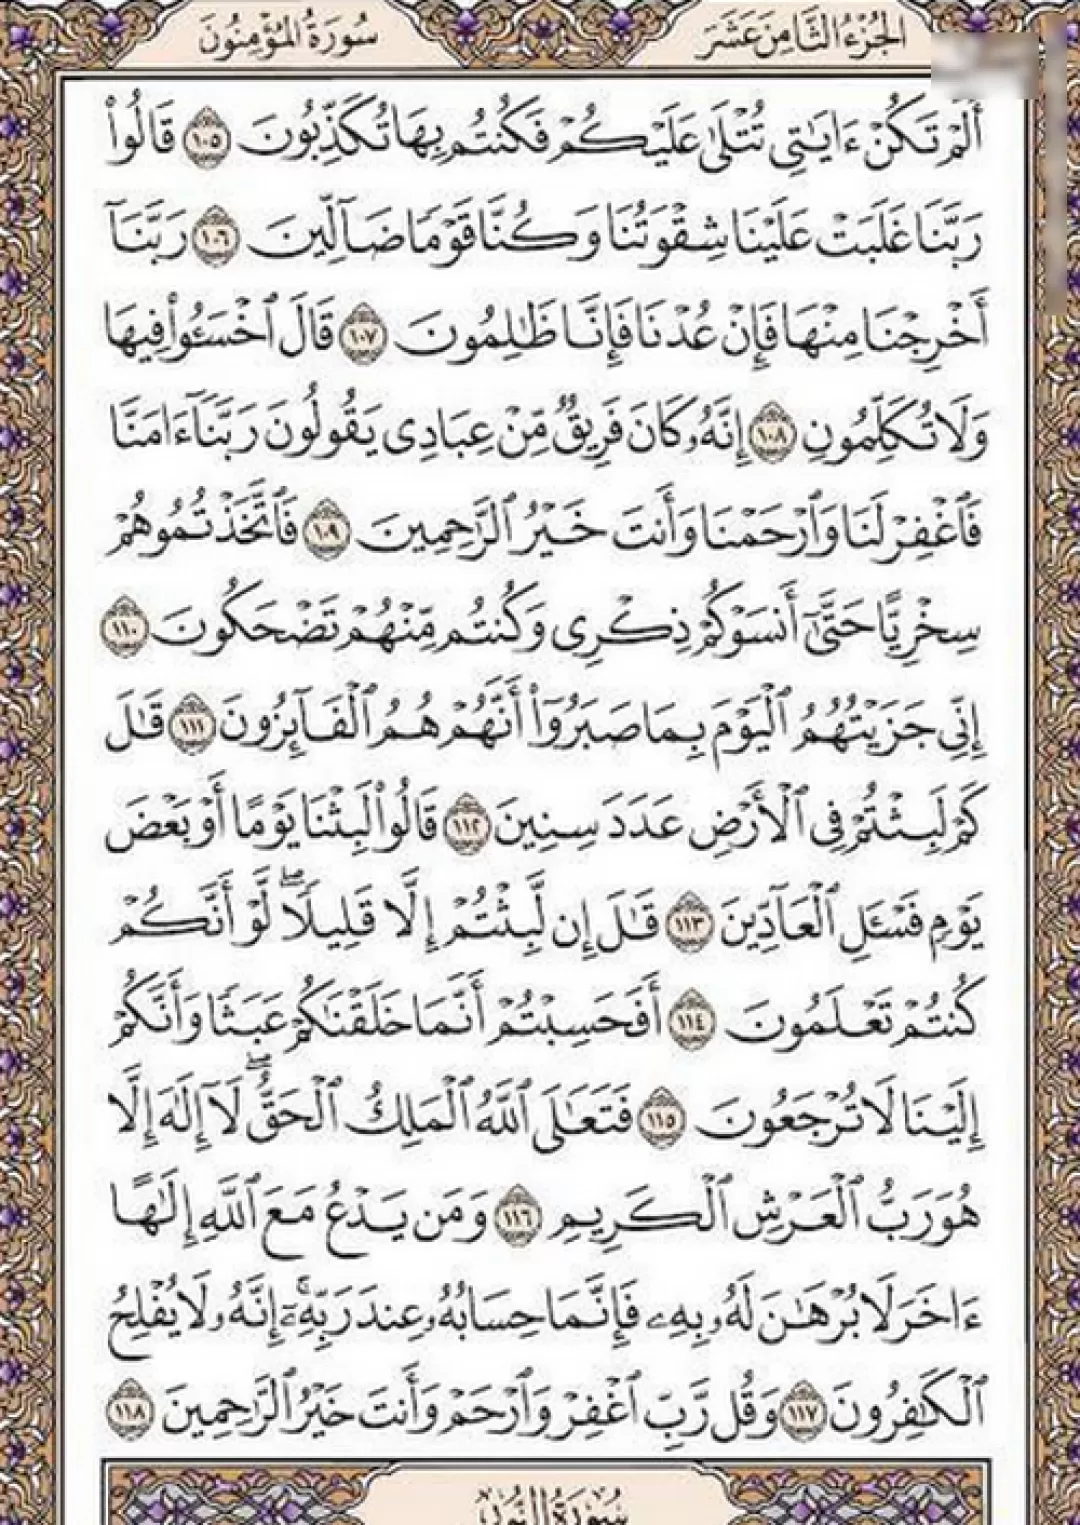 یک صفحه با نسیم الهی قرآن